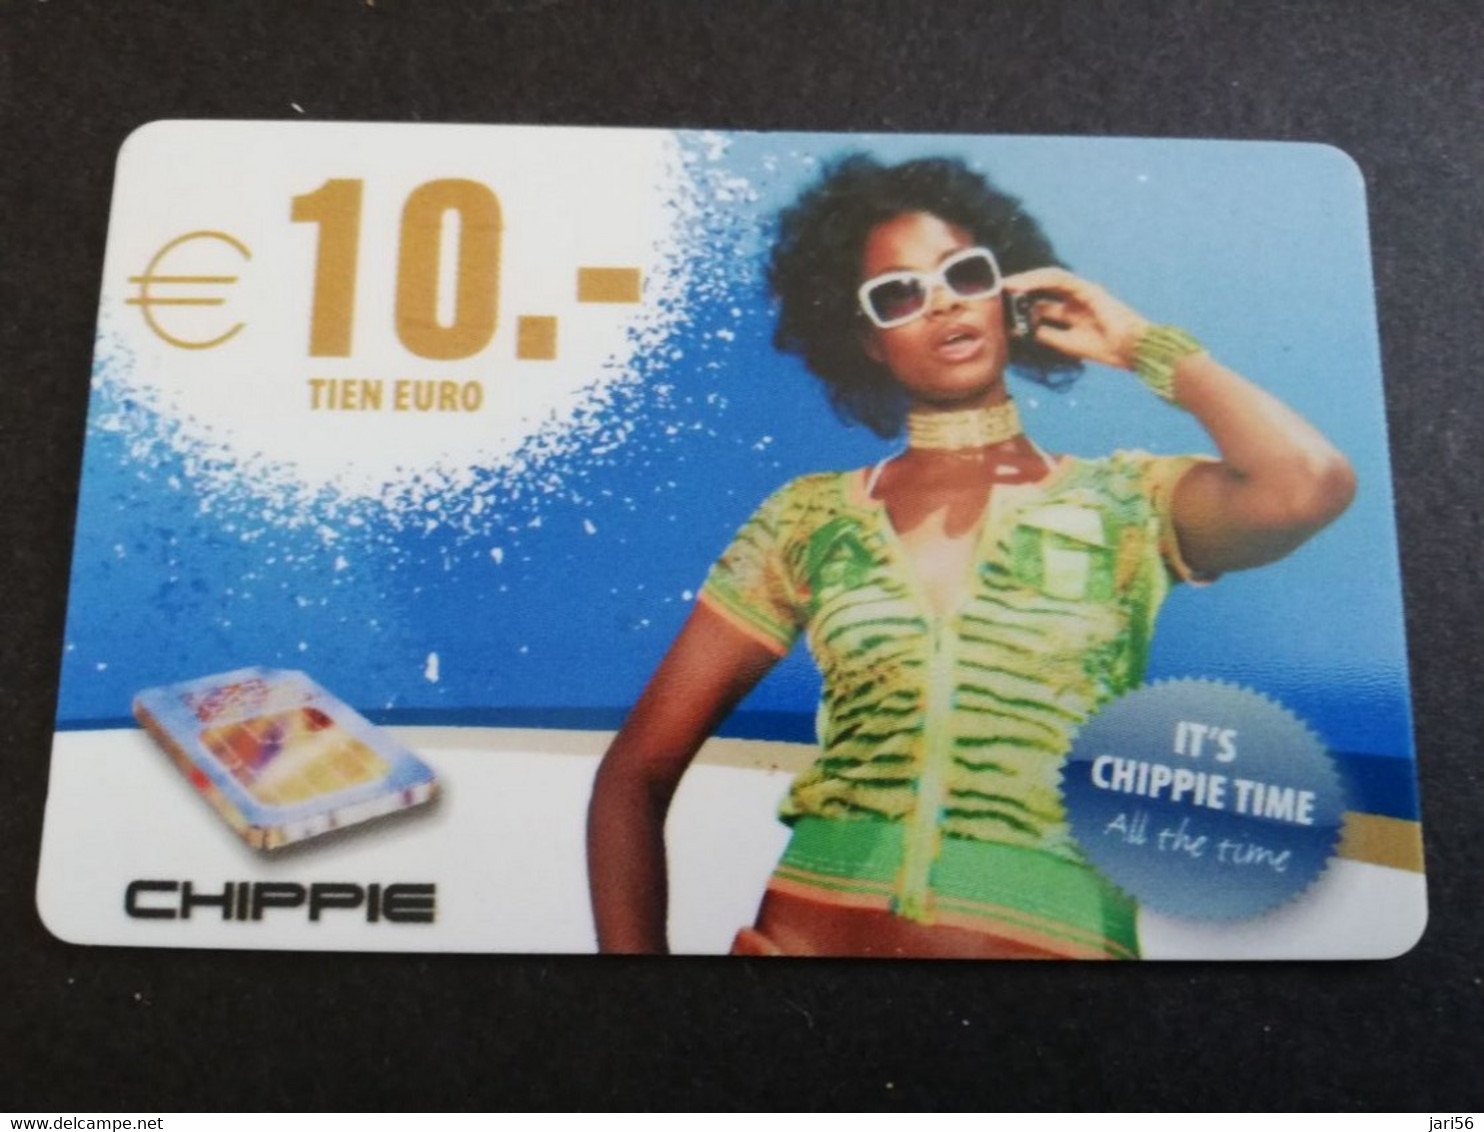 CURACAO  NAF 10- CHIPPIE / ITS CHIPPIE TIME              Fine Used Card   **4910** - Antillen (Niederländische)